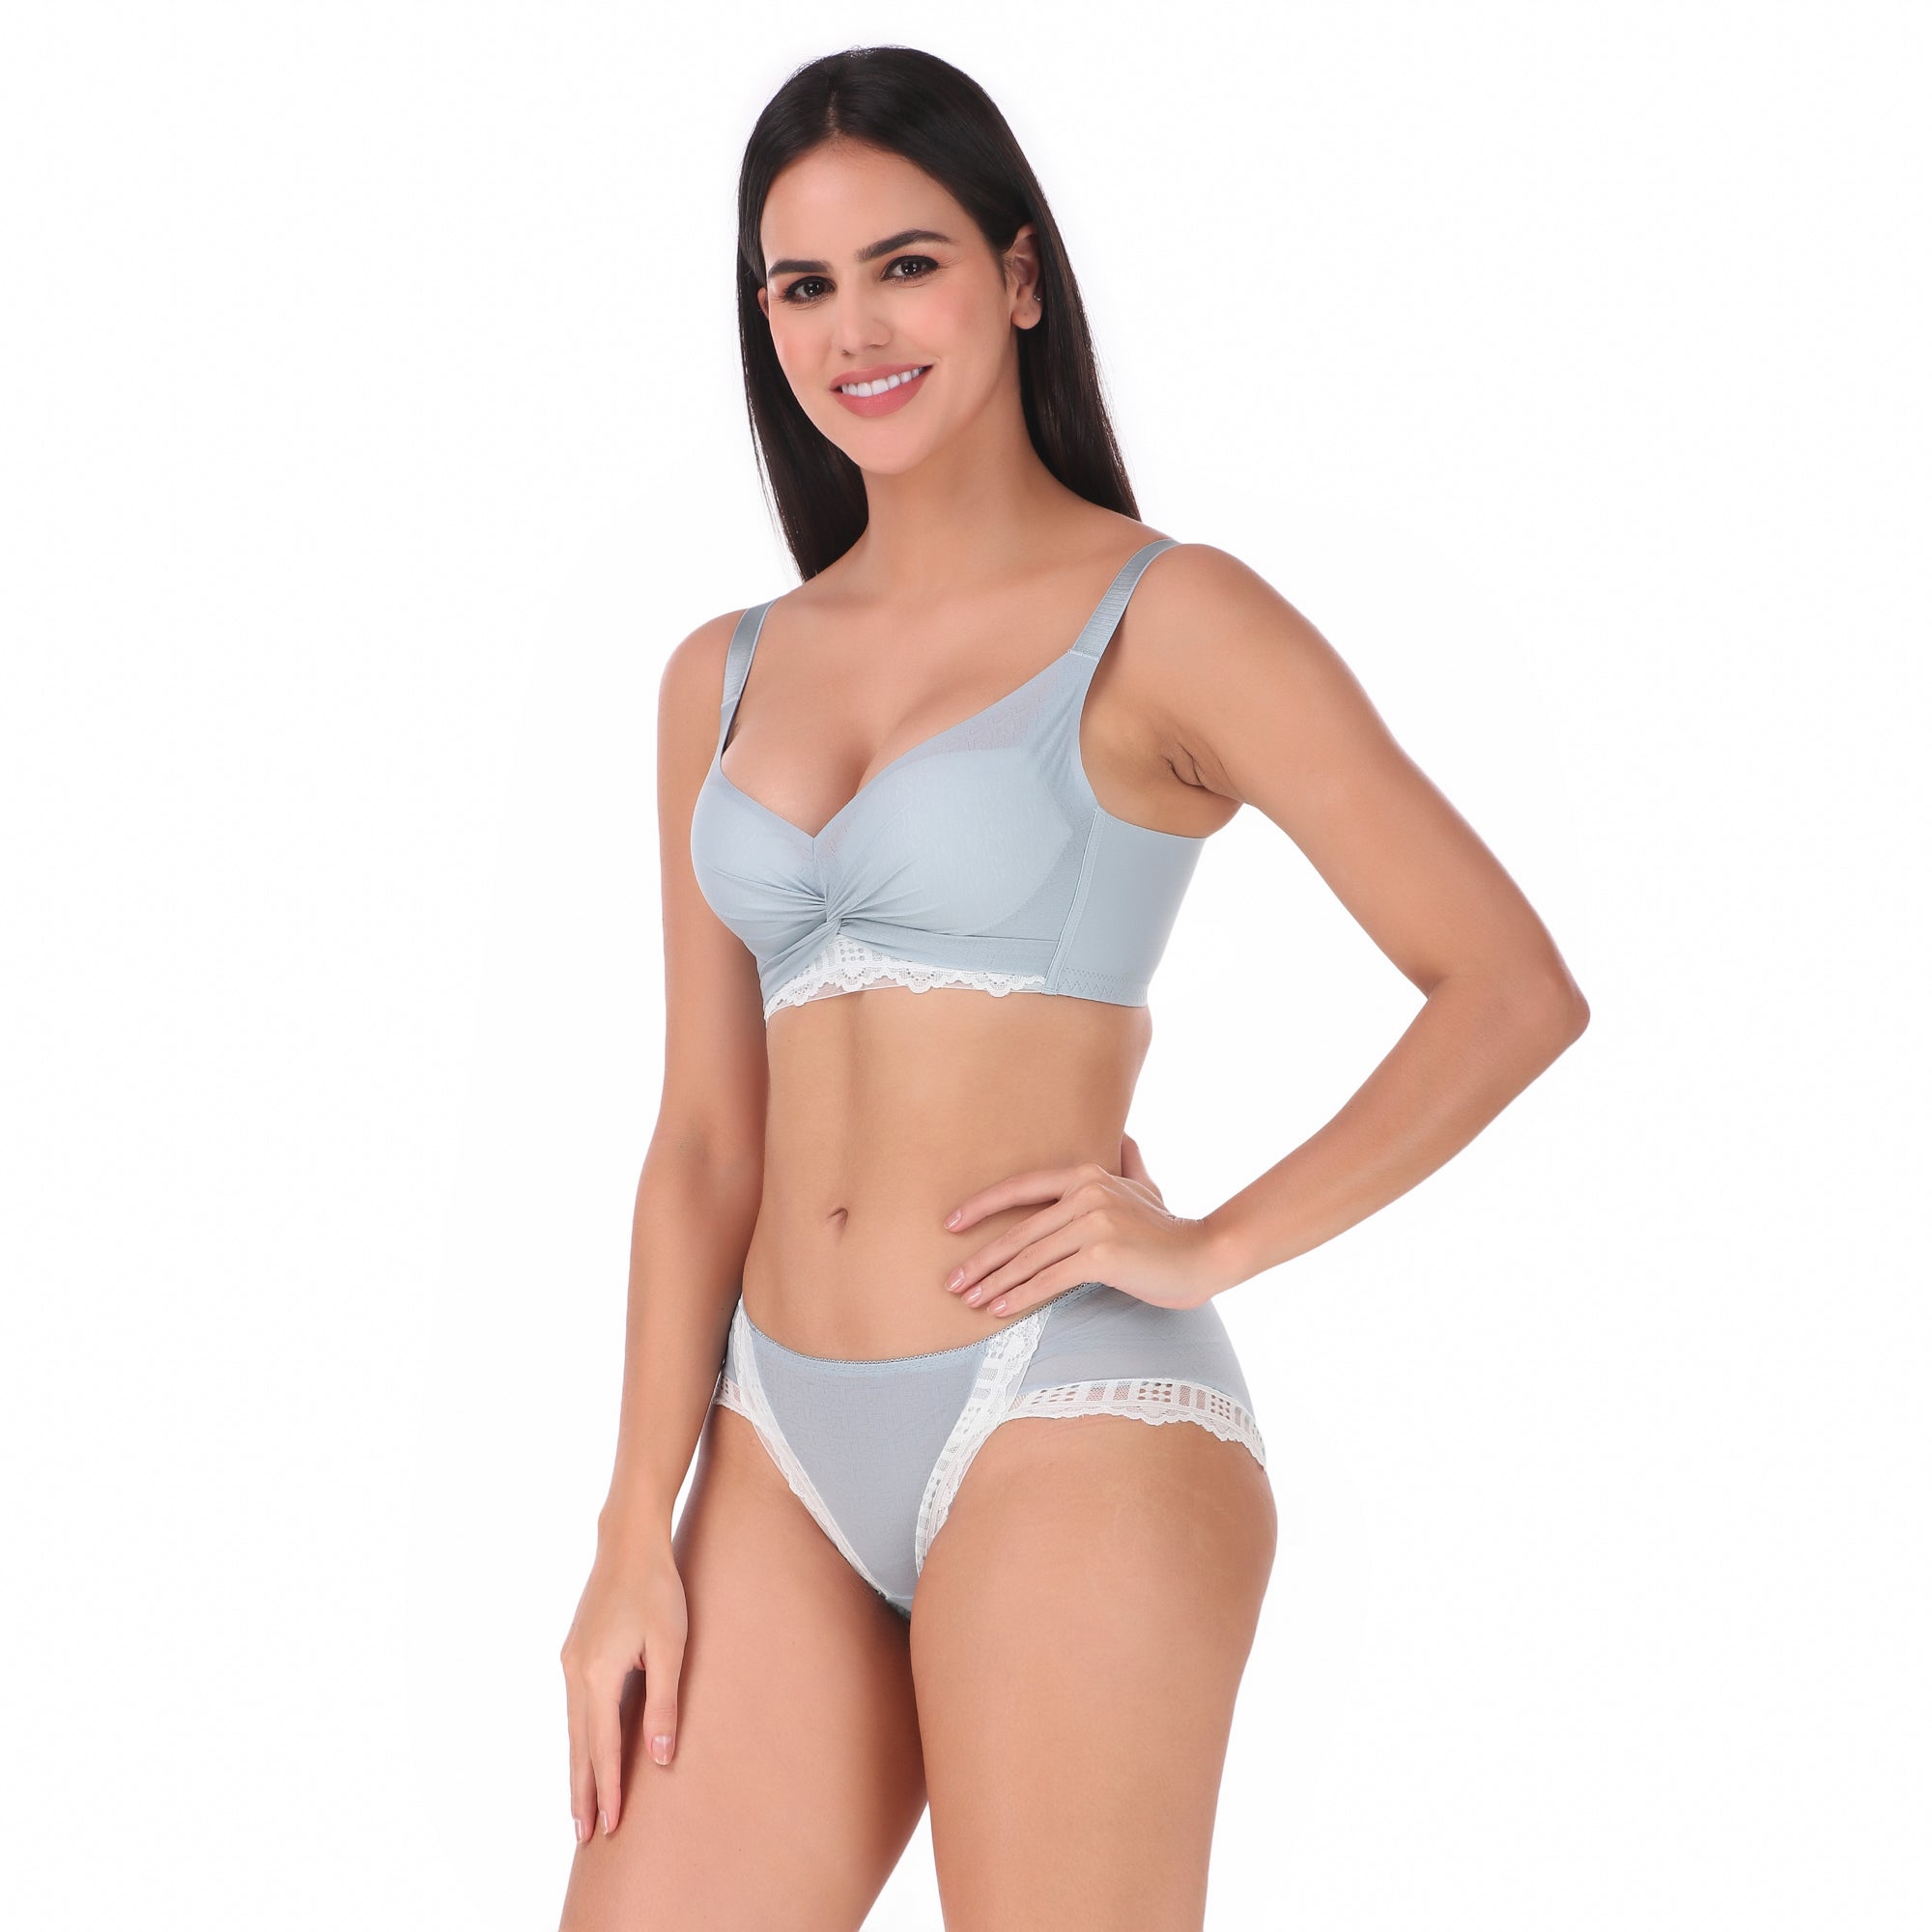 Buy Axtzh Panty Sets Online  Axtzh Women's Underwear & Lingerie